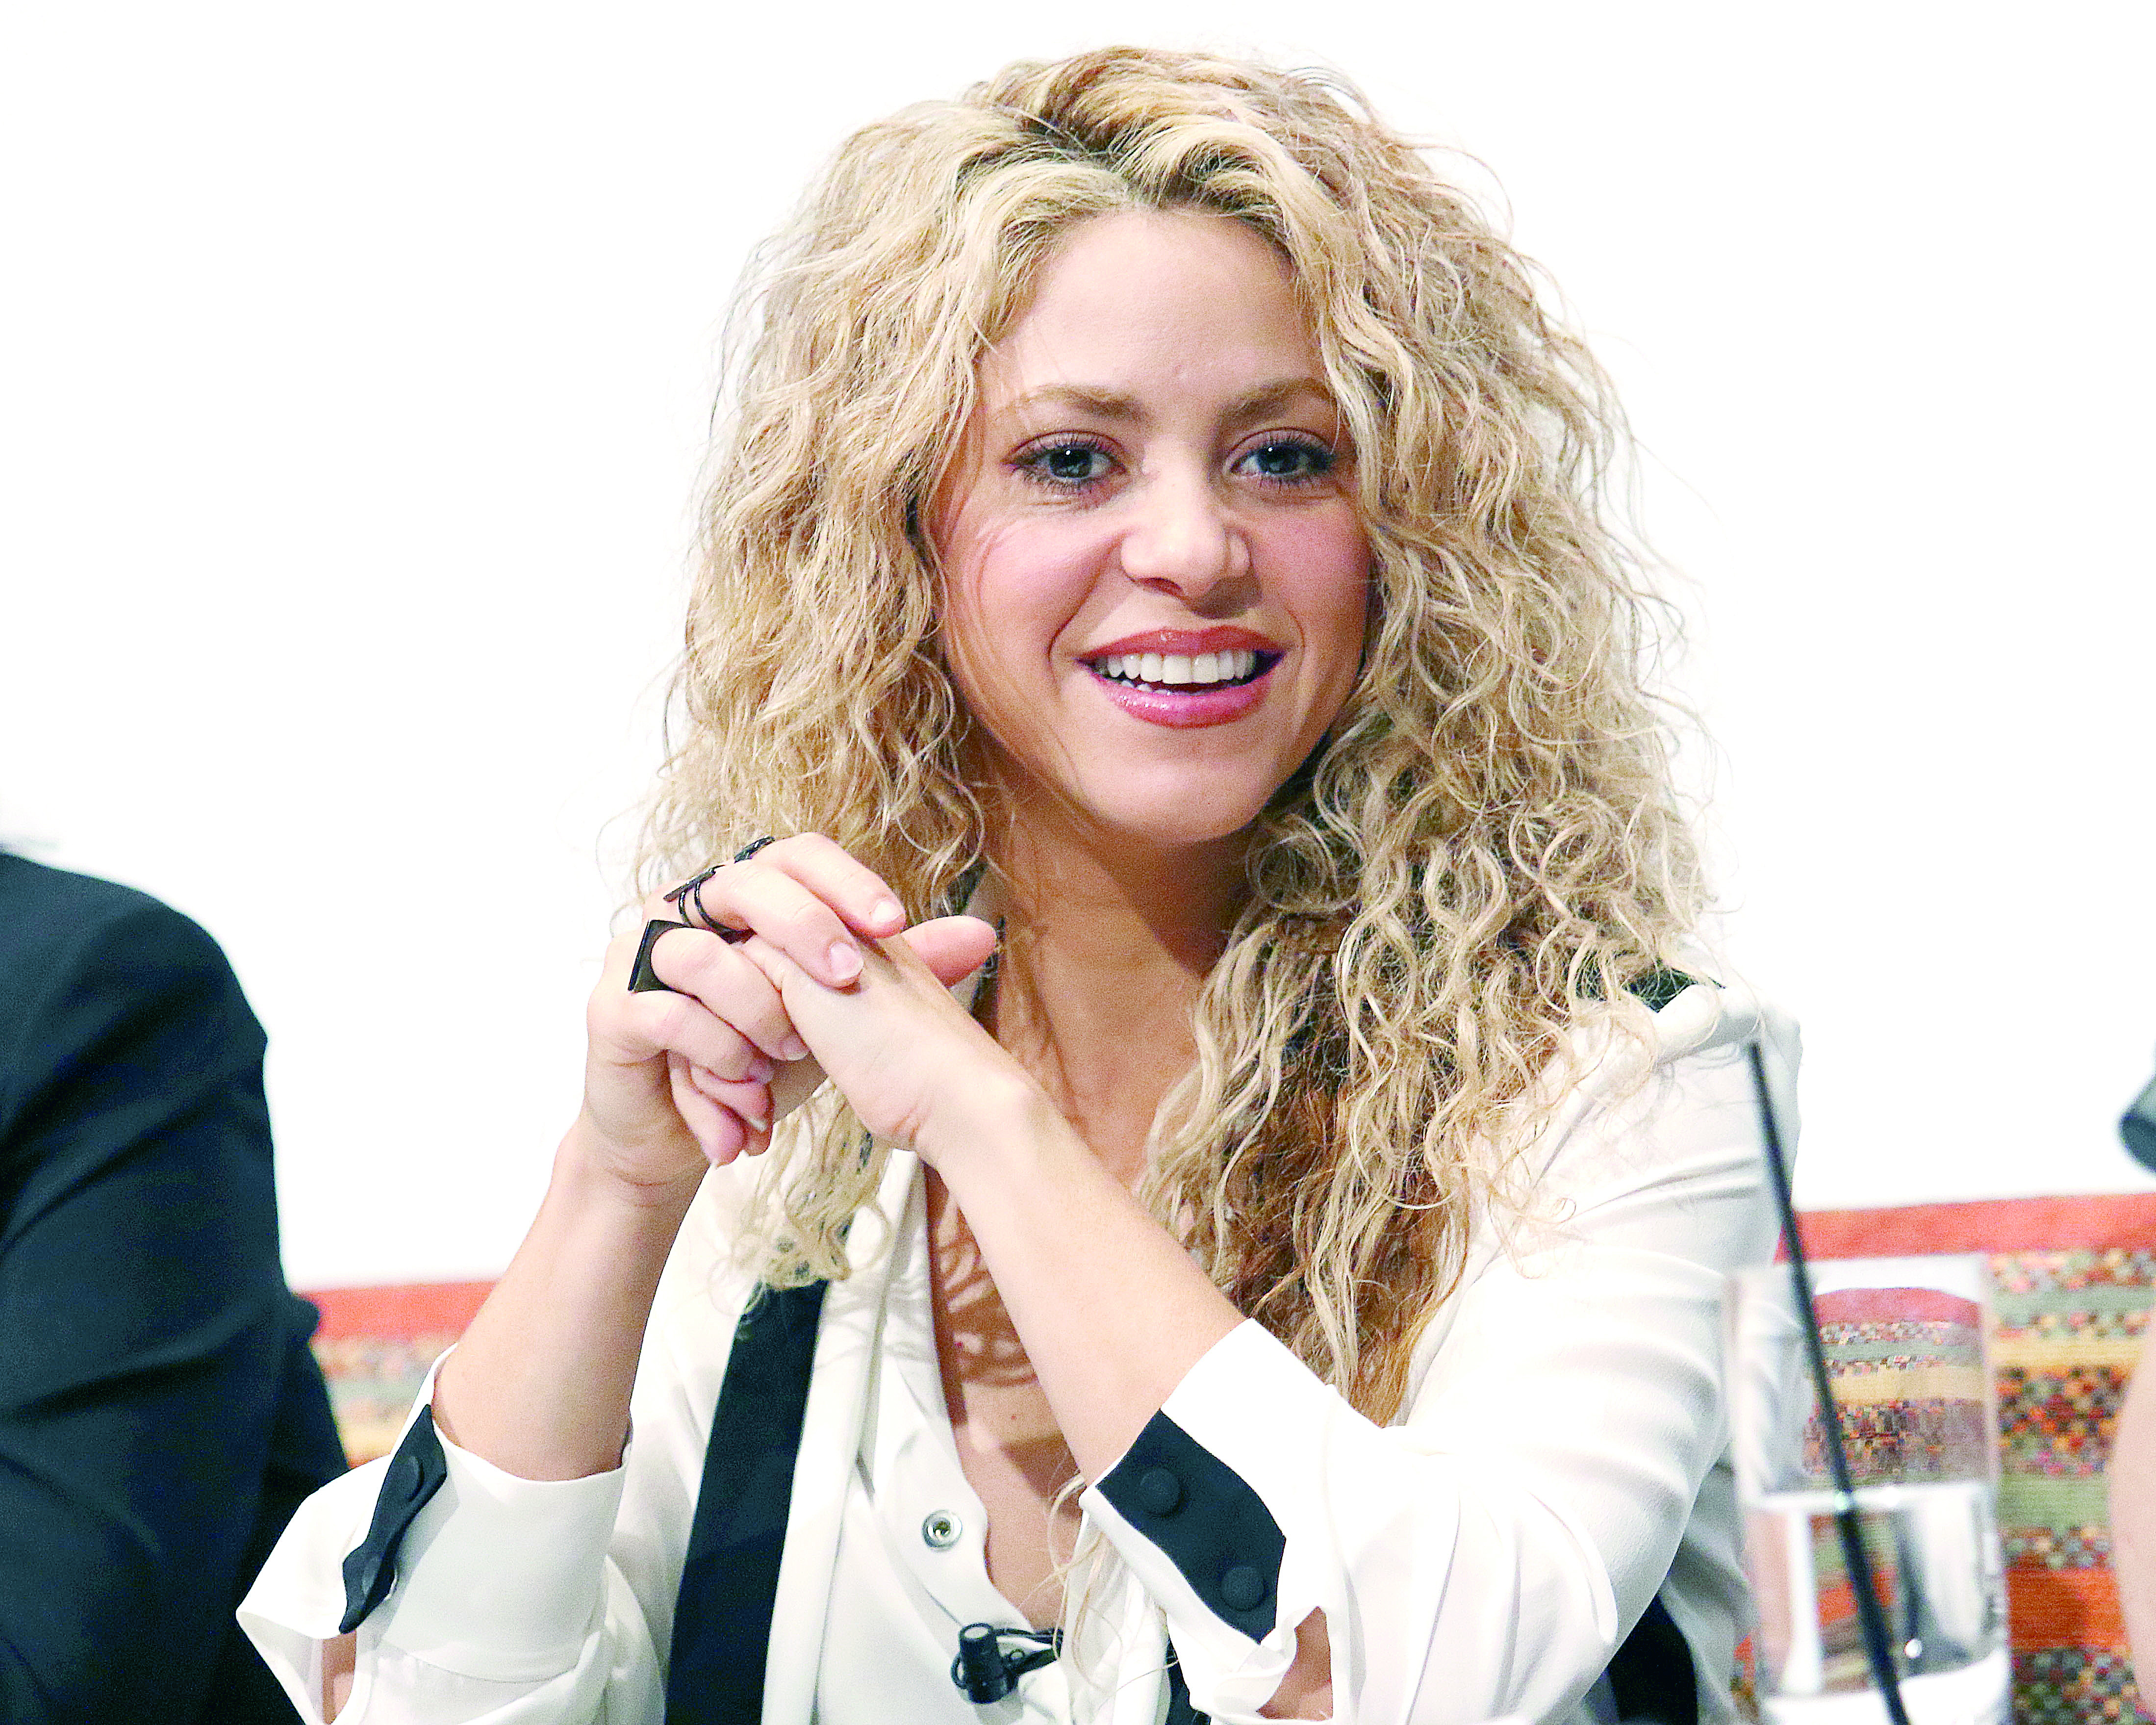 Juegos Centroamericanos se convirtieron en la "Fiesta de Shakira"